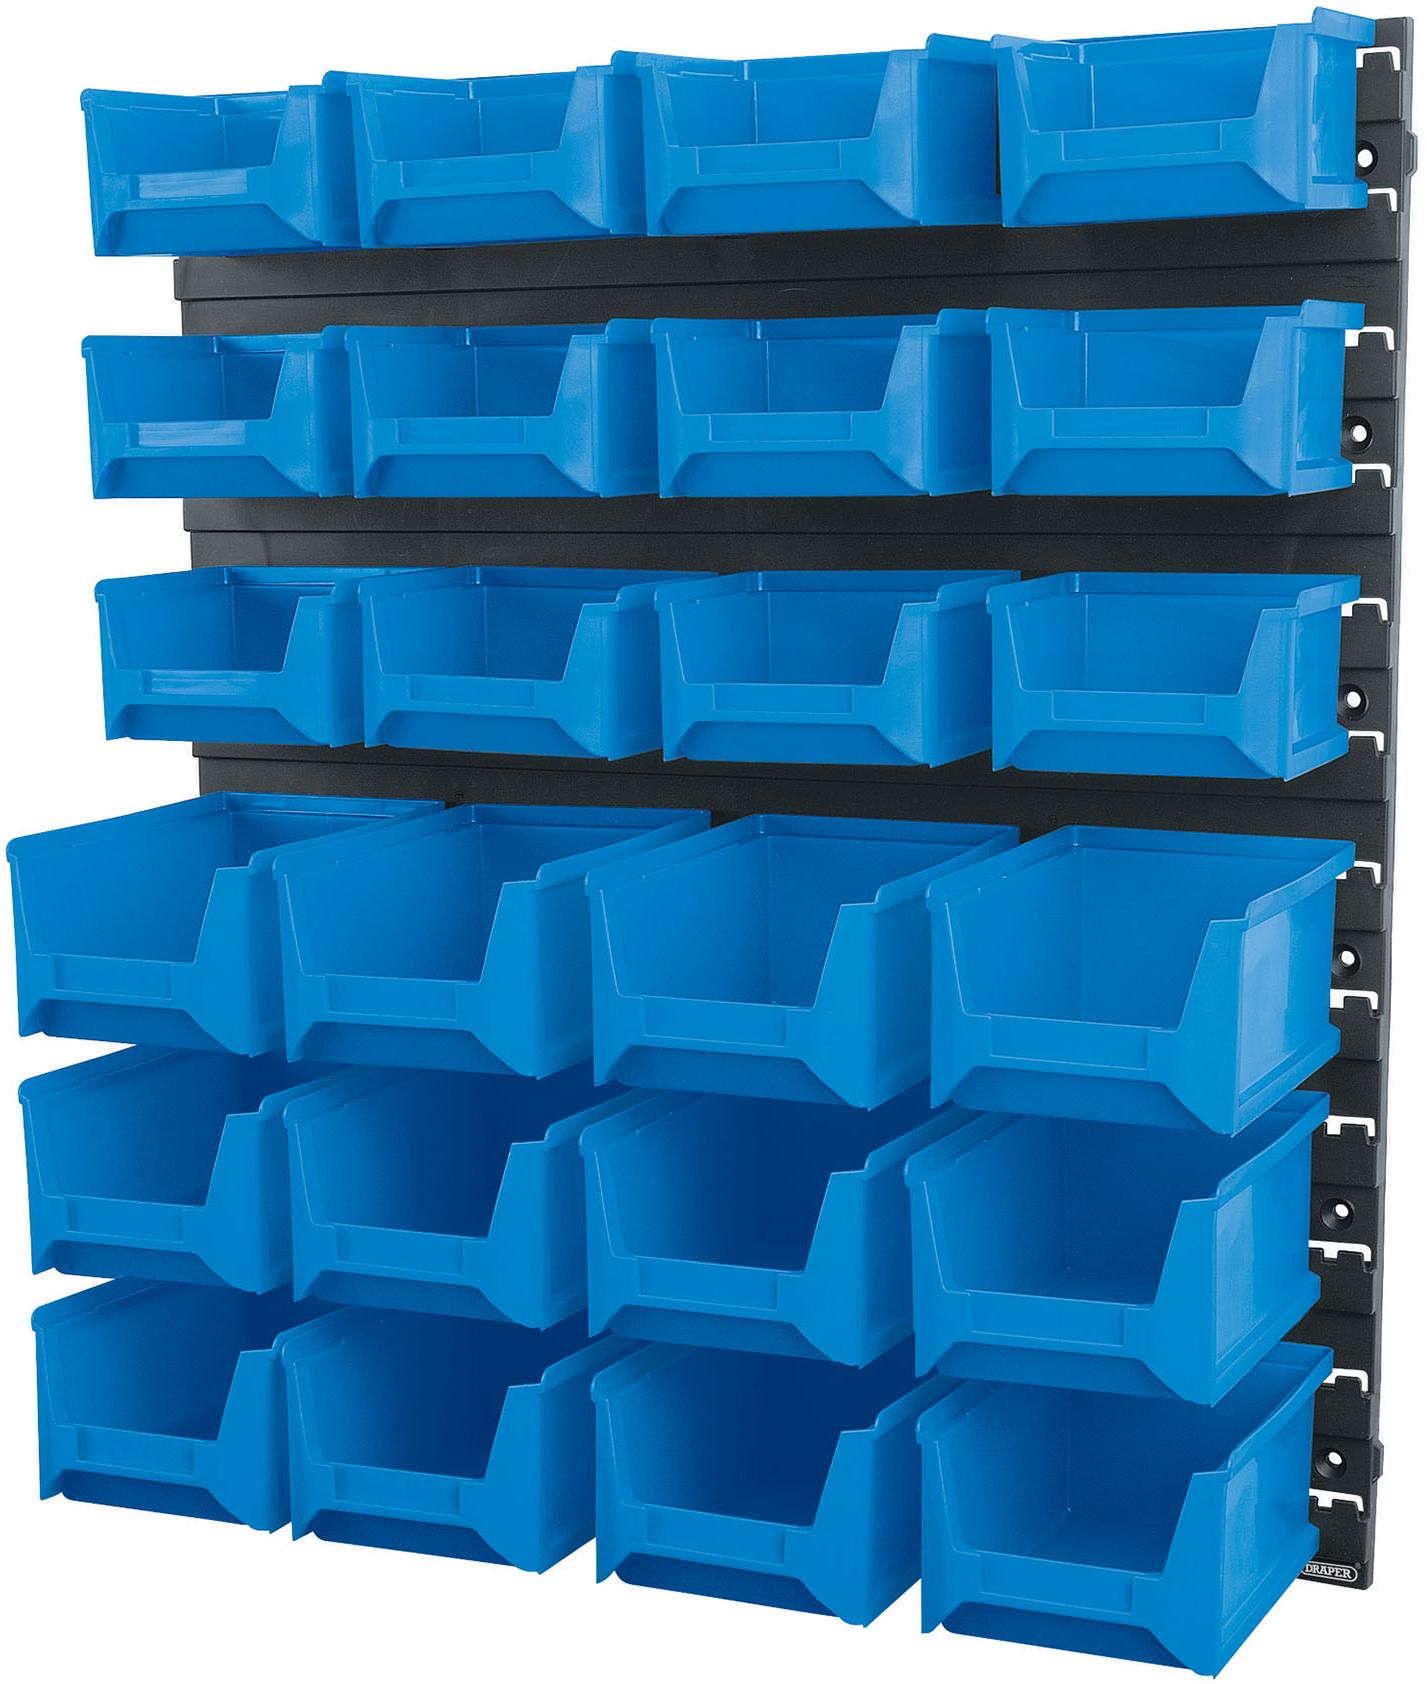 24 Bin Wall Storage Unit, Small/Medium Bins